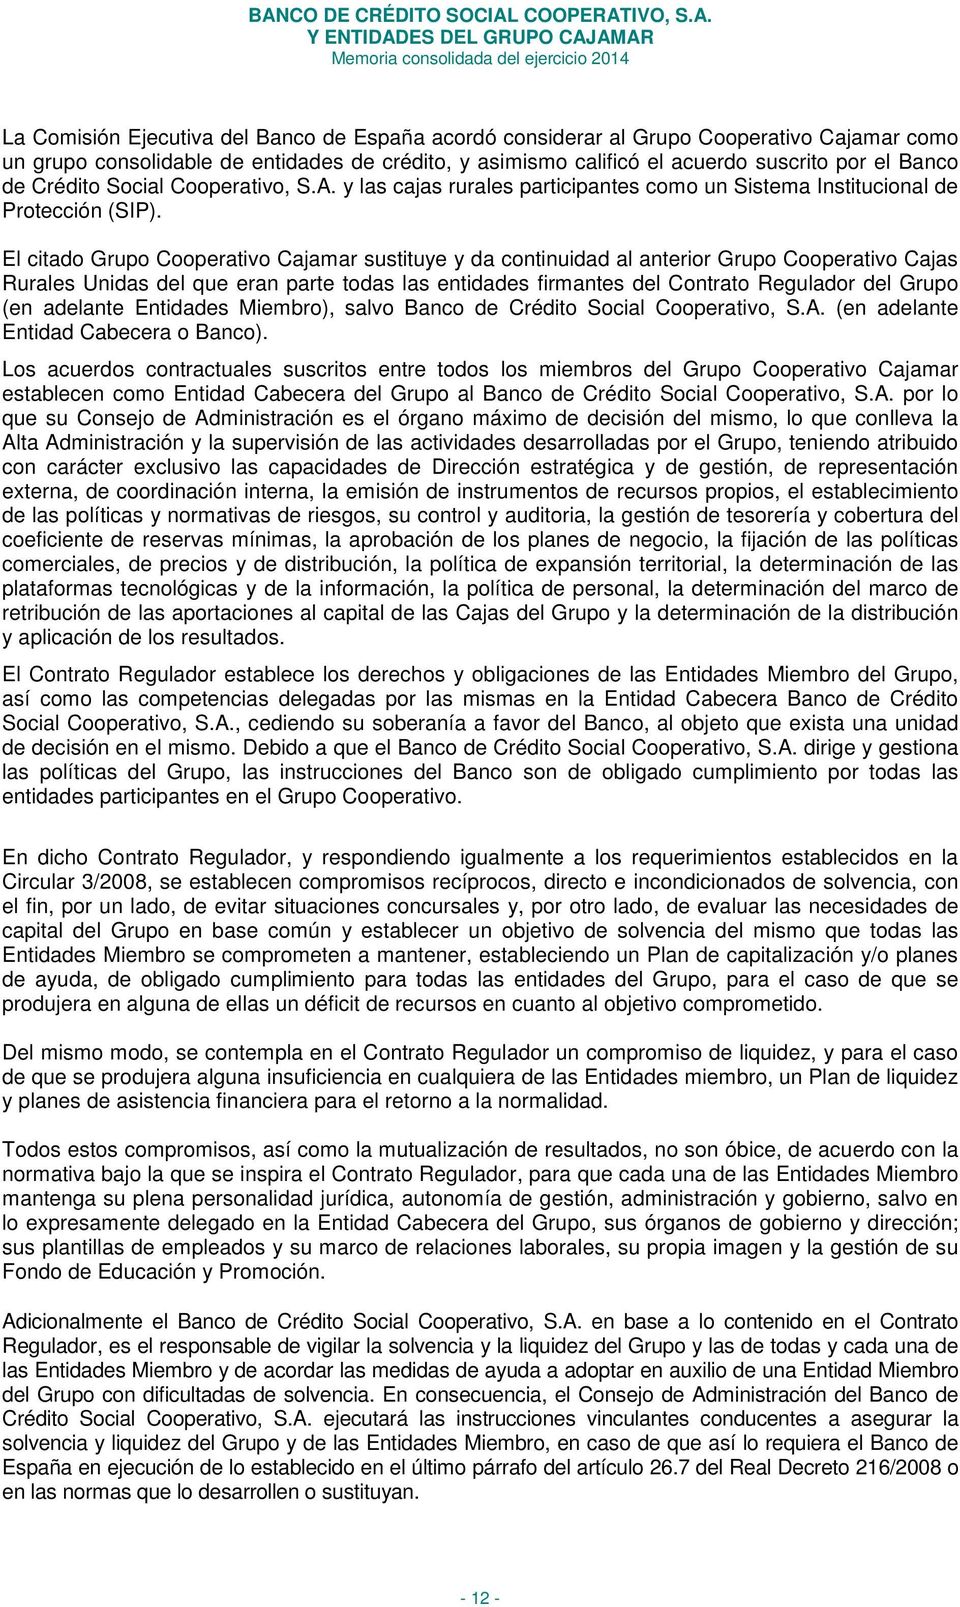 El citado Grupo Cooperativo Cajamar sustituye y da continuidad al anterior Grupo Cooperativo Cajas Rurales Unidas del que eran parte todas las entidades firmantes del Contrato Regulador del Grupo (en